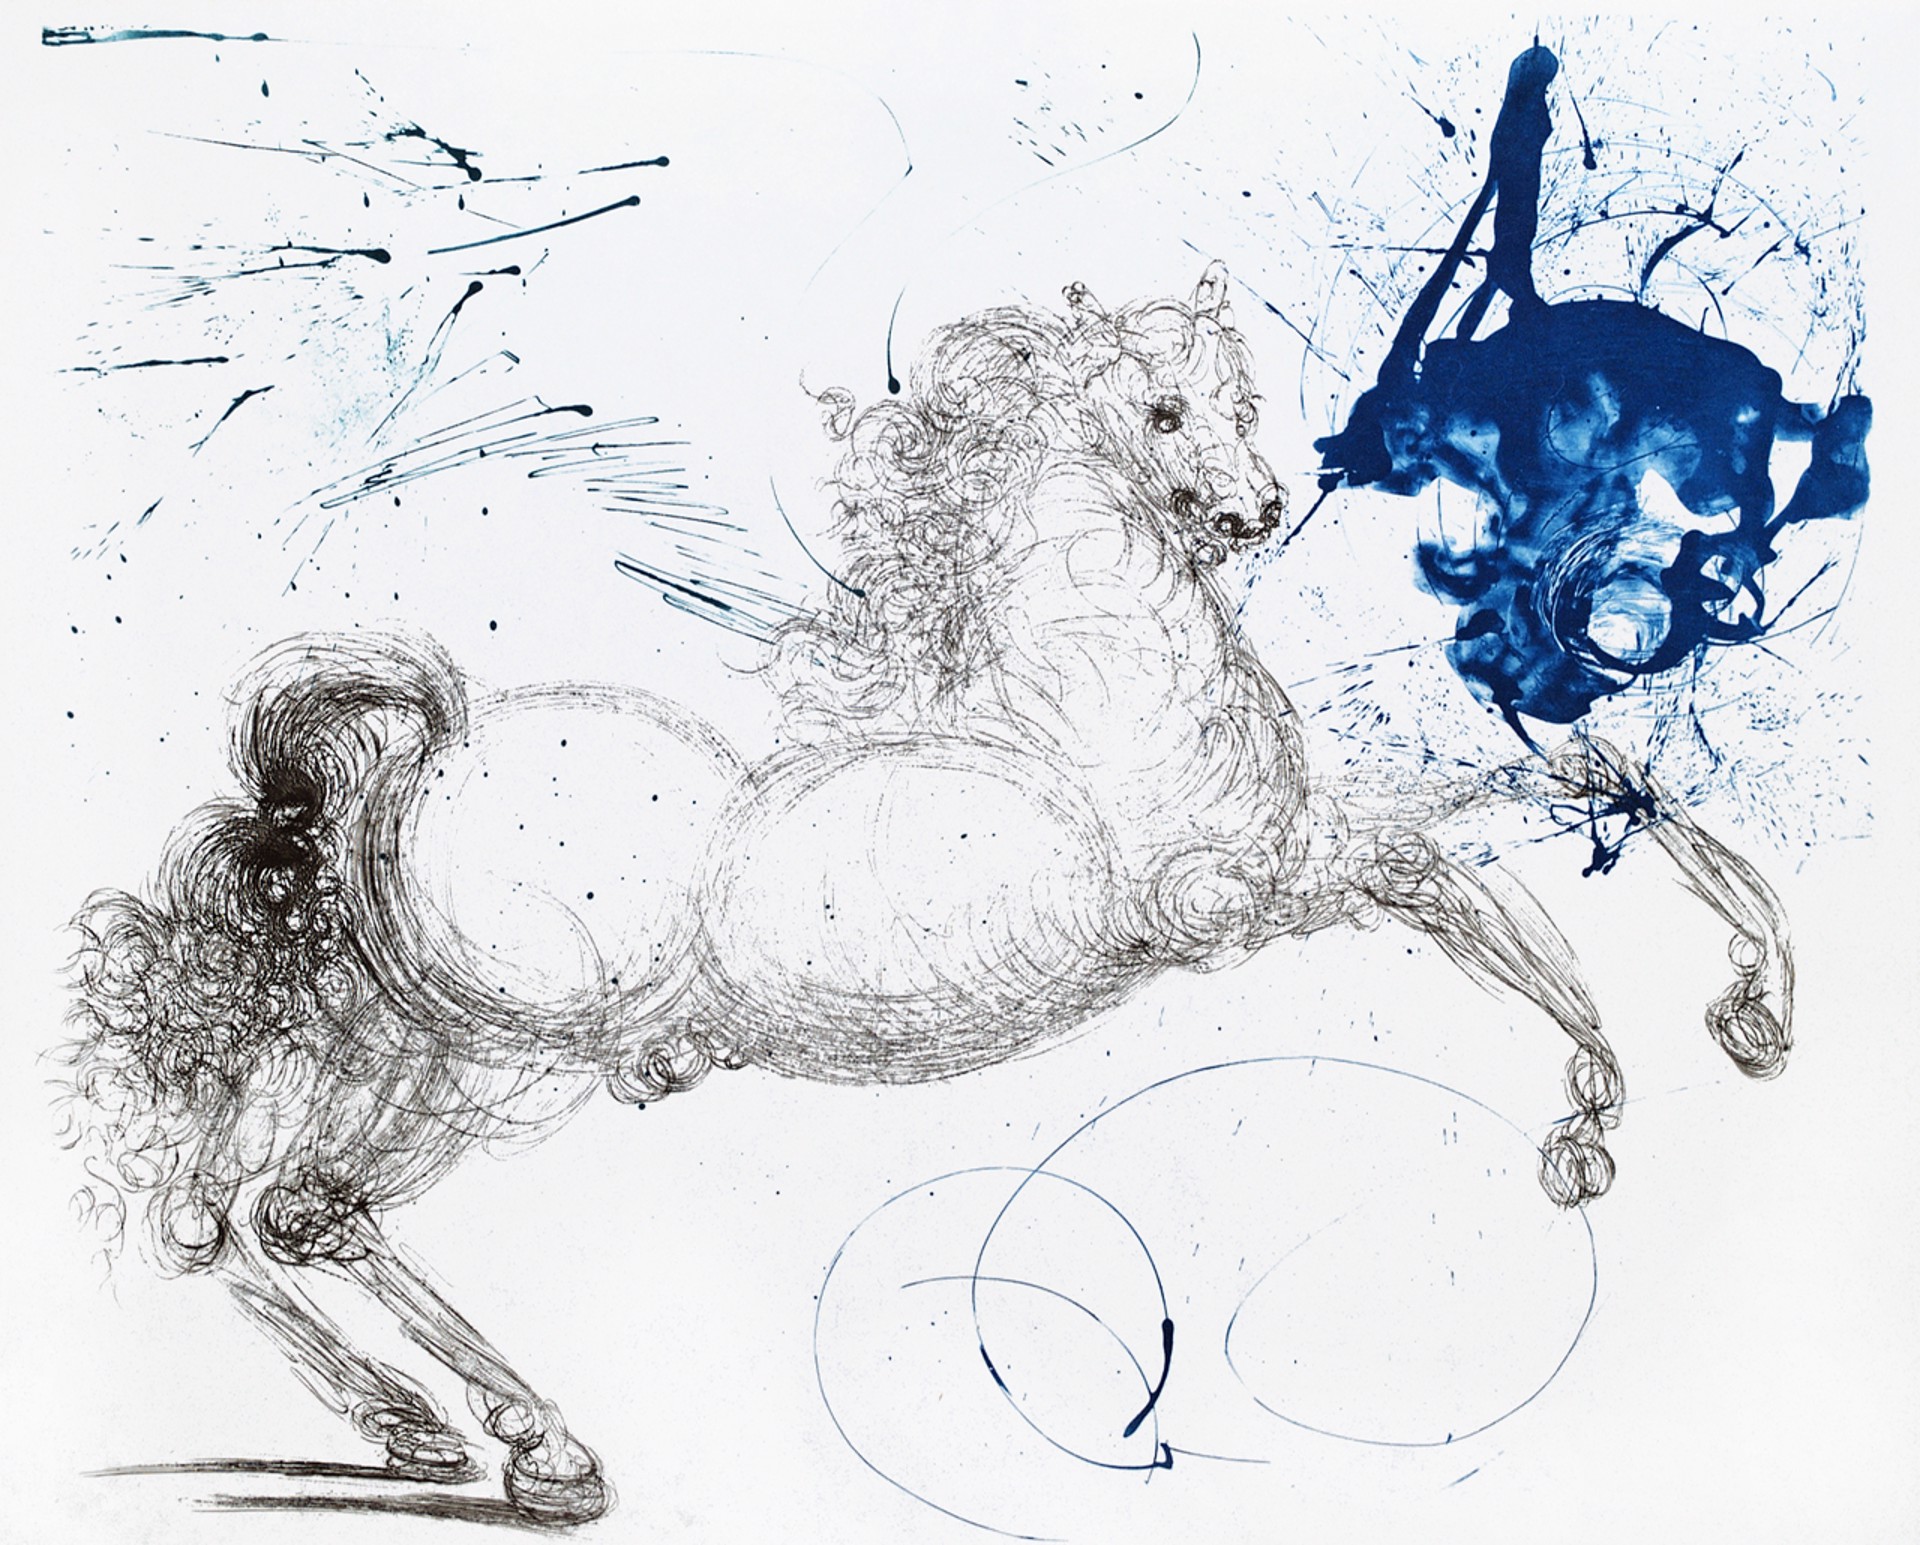 Mythology "Pegasus" by Salvador Dalí